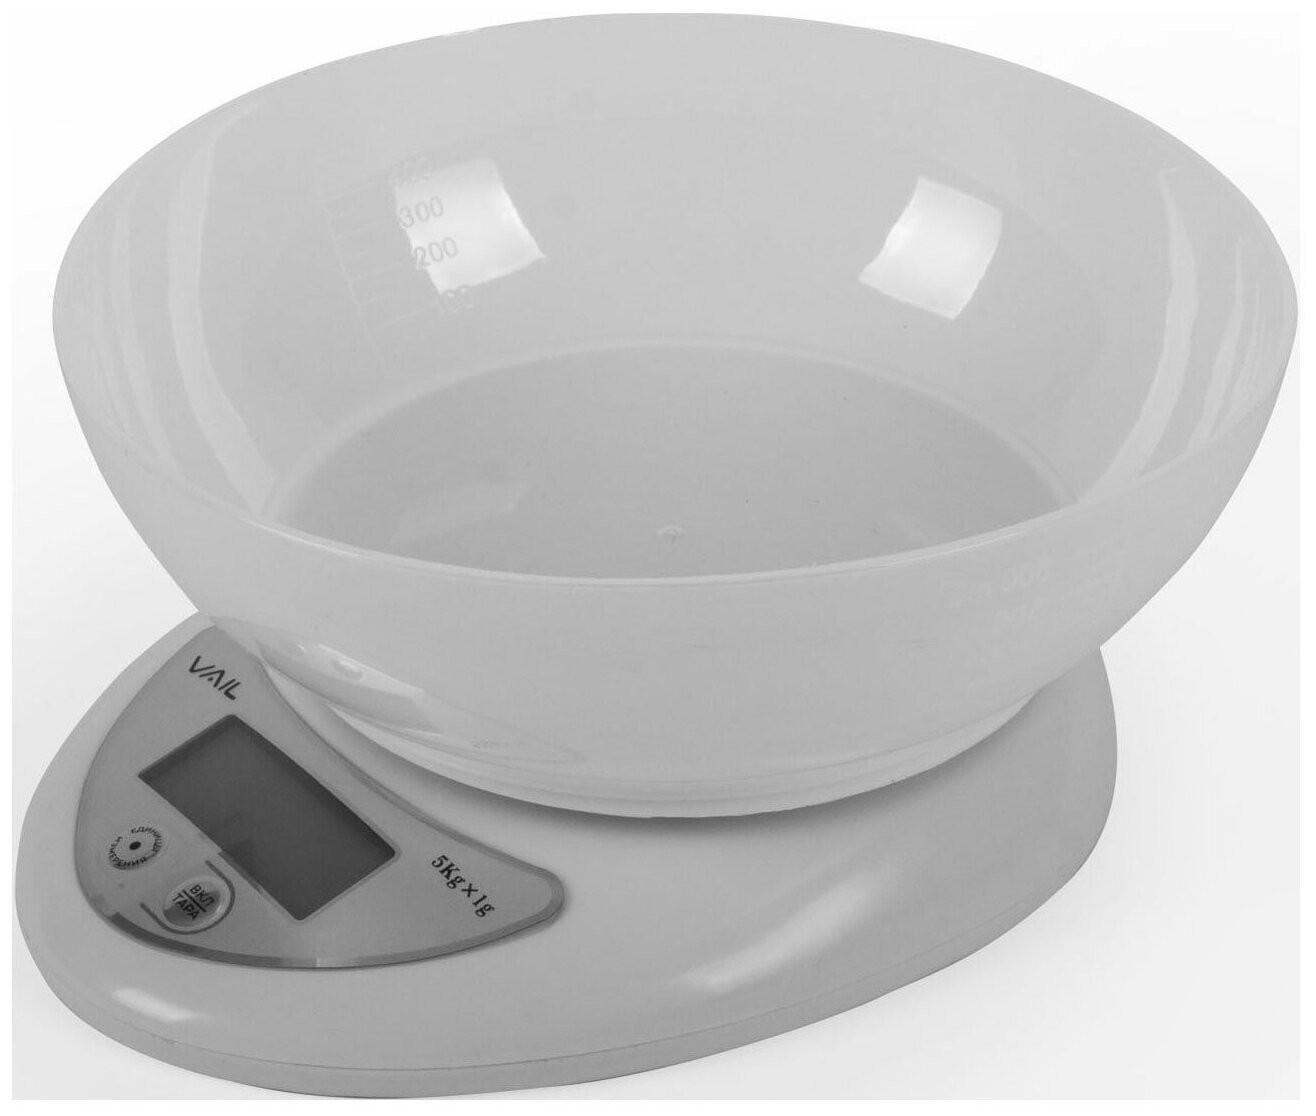 Весы кухонные электронные с чашей VAIL VL-5809, 5 кг